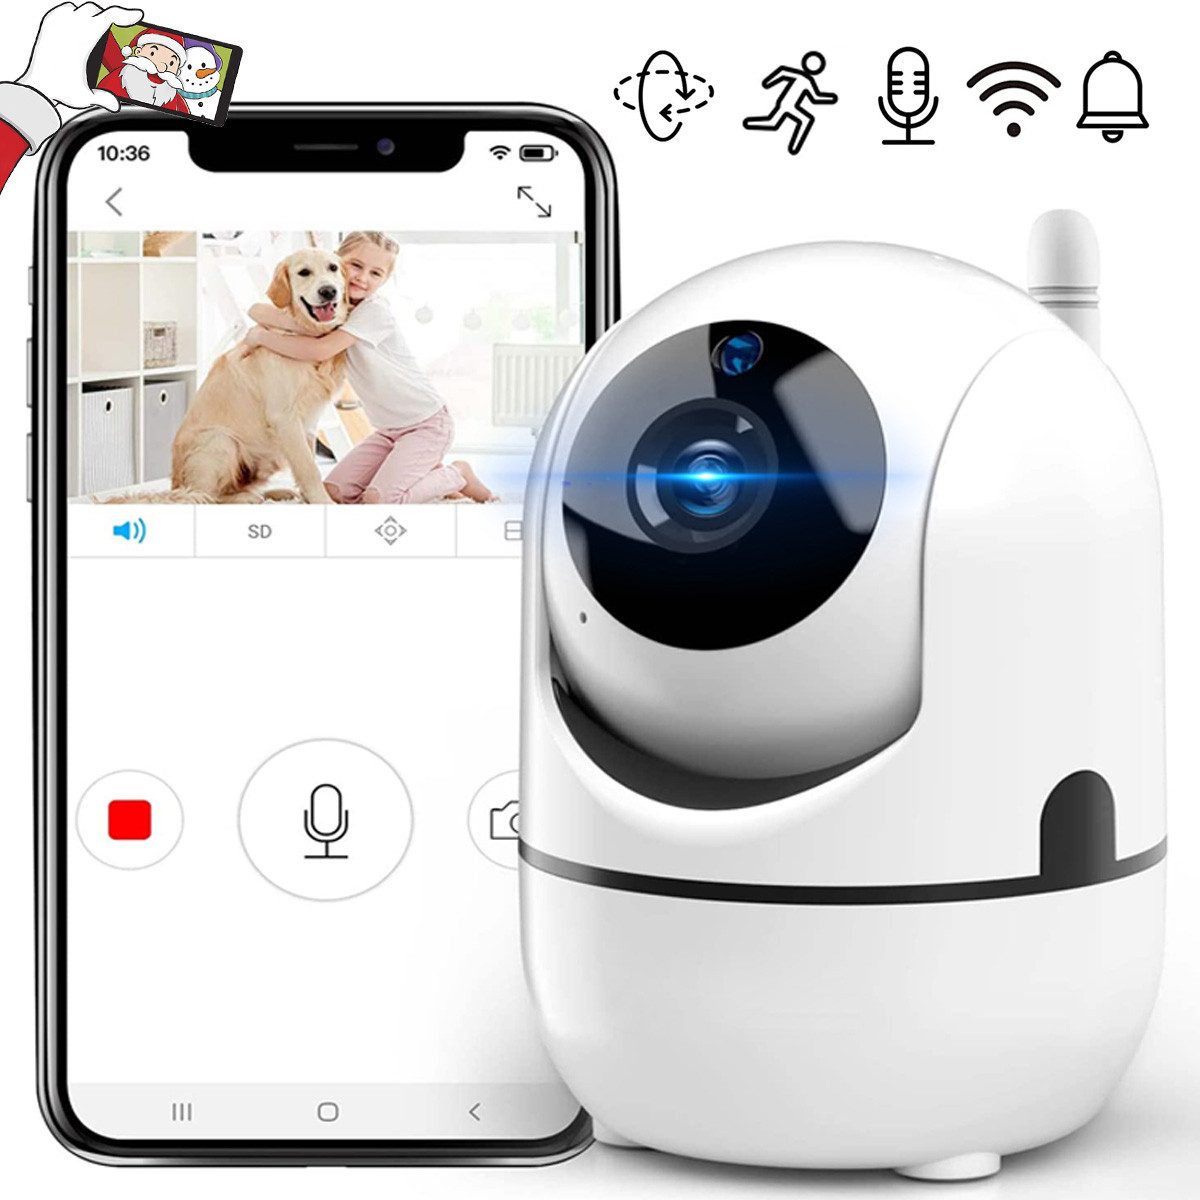 Avisto Babyphone Babyphone mit Kamera Wlan Überwachungskamera Bewegungserkennung, Mit einer stabilen 2.4 GHz WIFI-Verbindung können Sie jederzeit und überall sehen, mit Gegensprechfunktion,Infrarot-Nachtsicht,Unterstützung iOS/Android